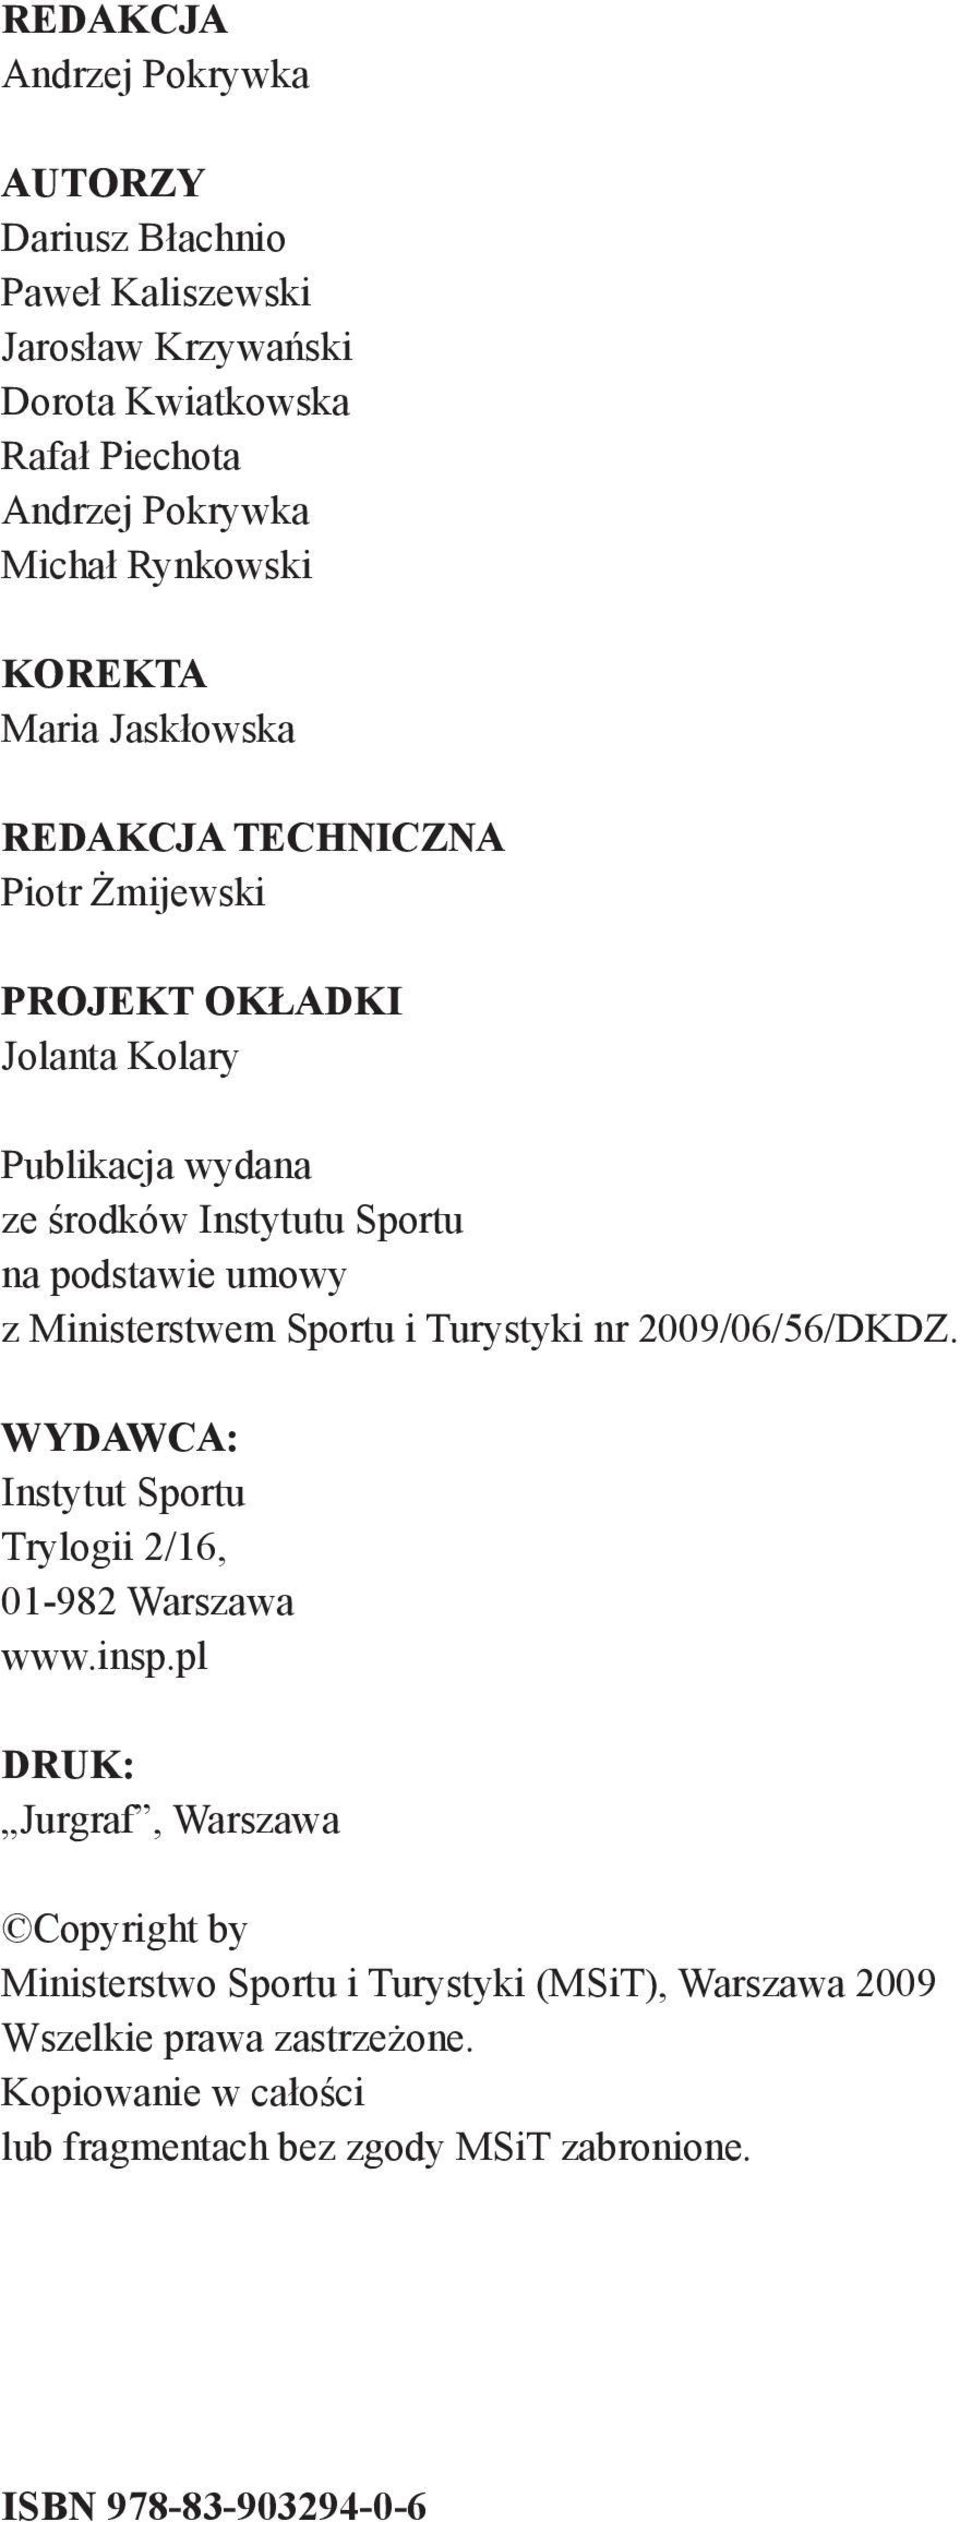 Ministerstwem Sportu i Turystyki nr 2009/06/56/DKDZ. Wydawca: Instytut Sportu Trylogii 2/16, 01-982 Warszawa www.insp.